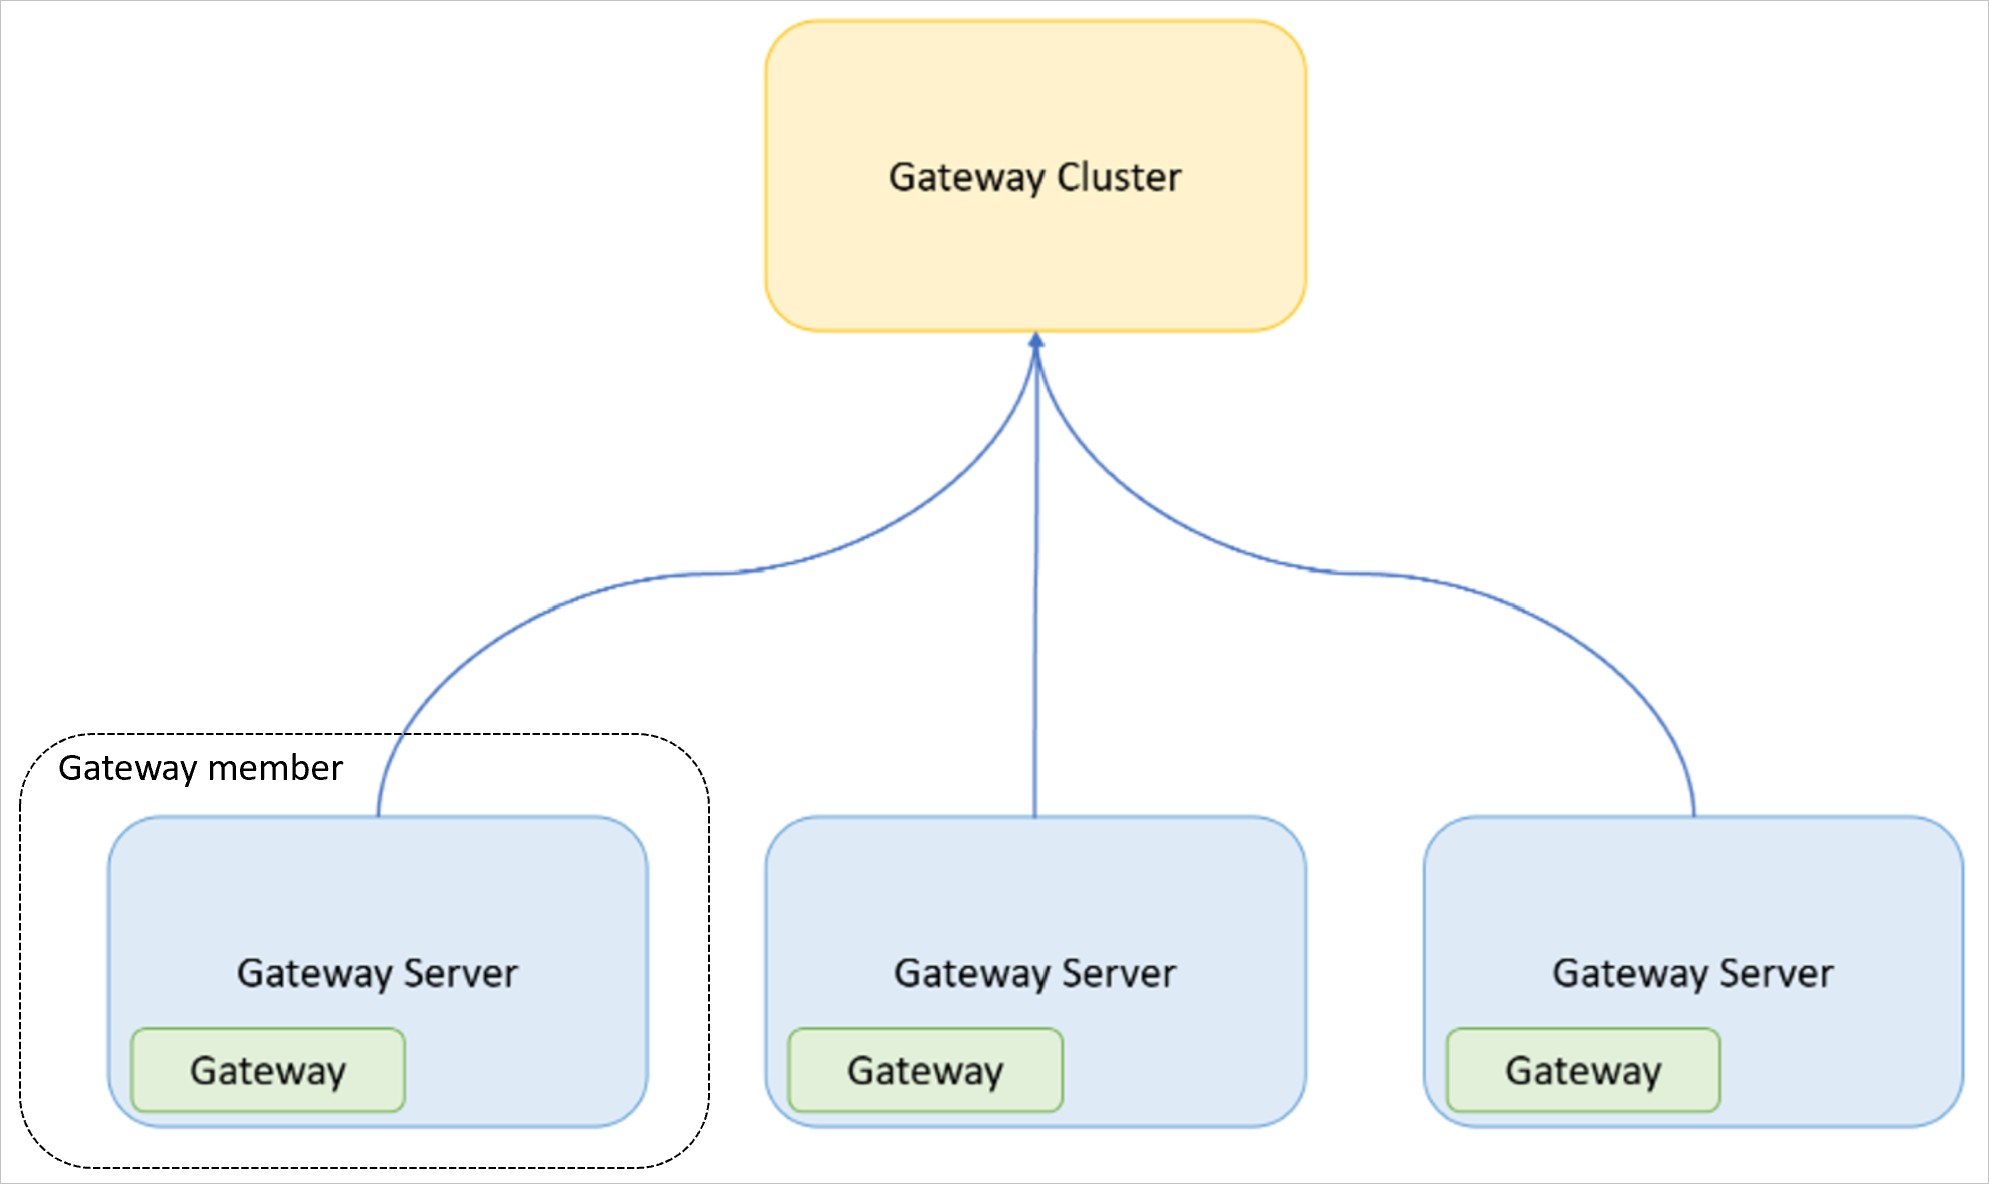 Изображение: кластер шлюзов в составе трех серверов шлюзов, каждый из которых содержит отдельный шлюз